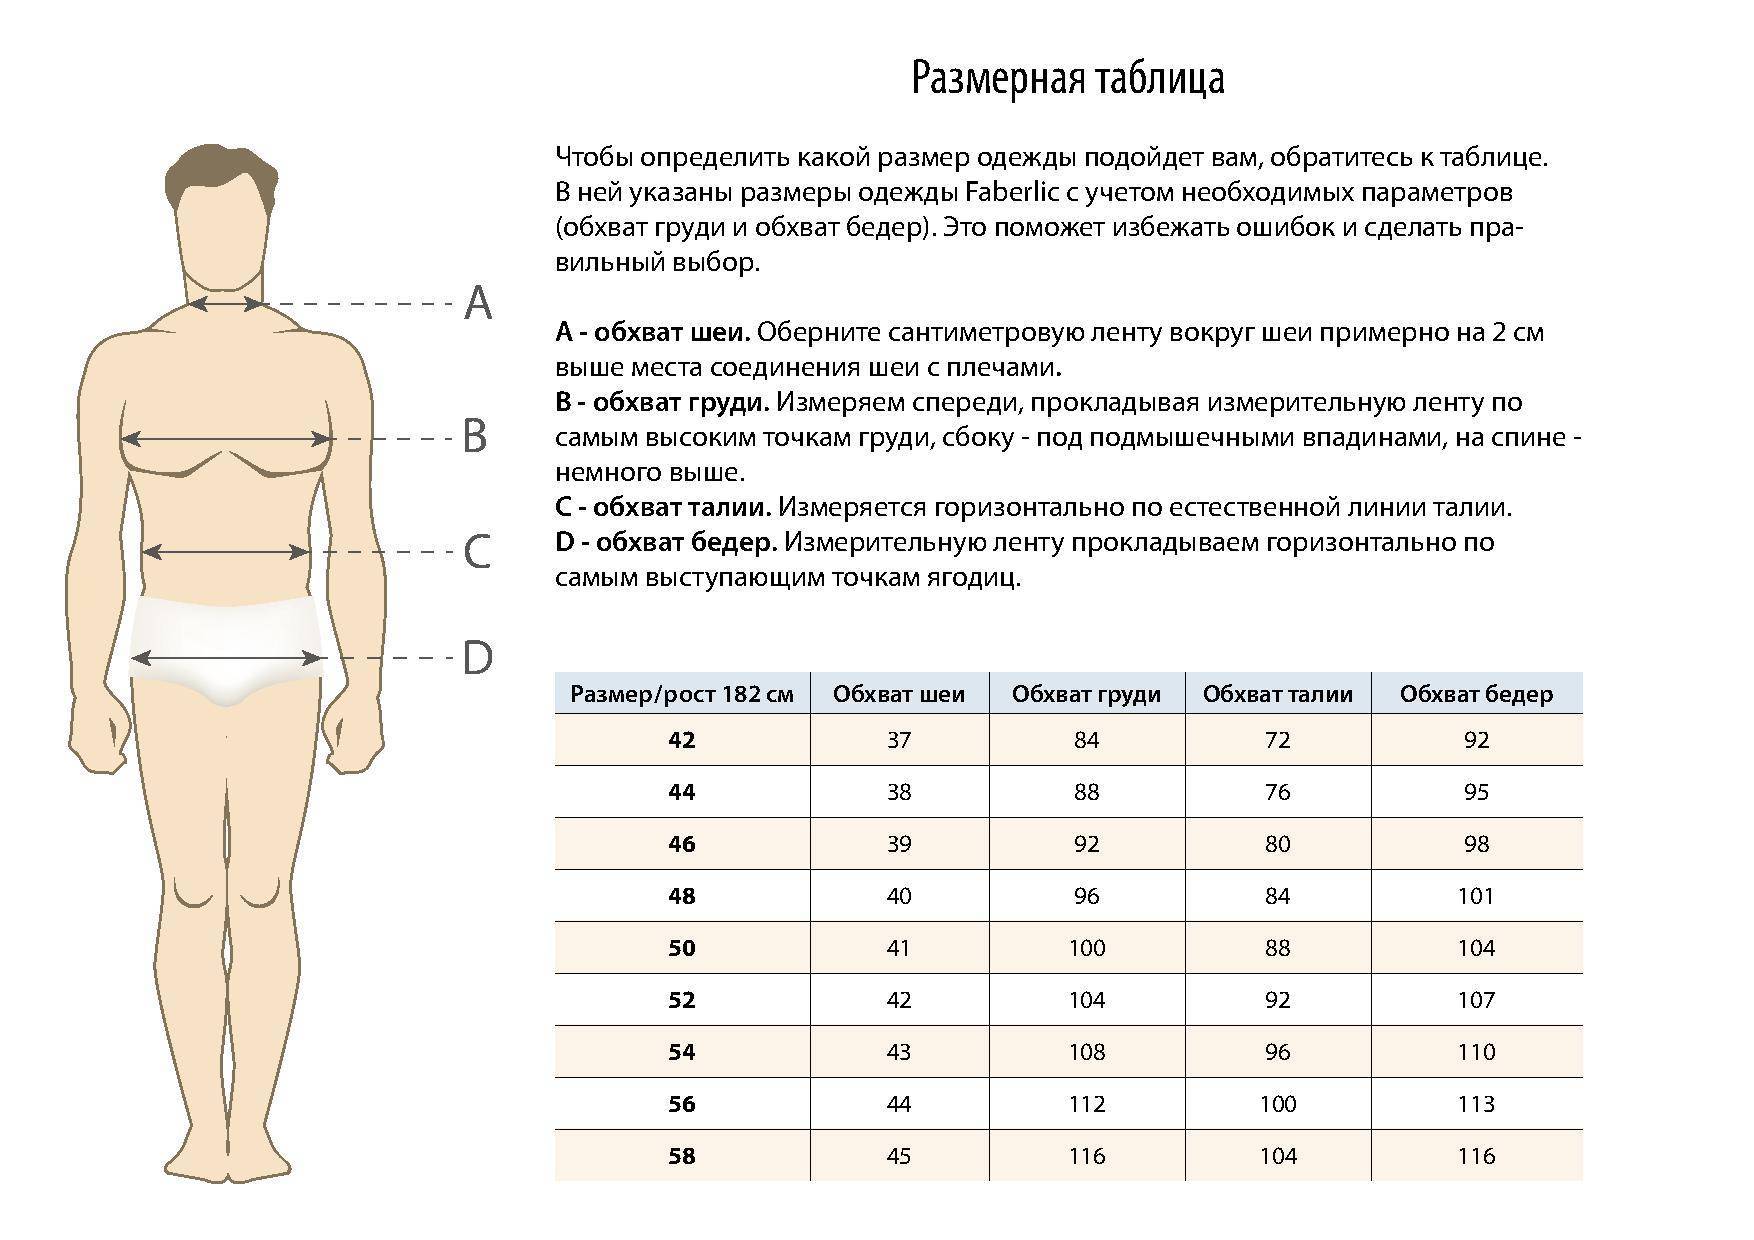 соотношение талии груди и бедер у мужчин фото 4